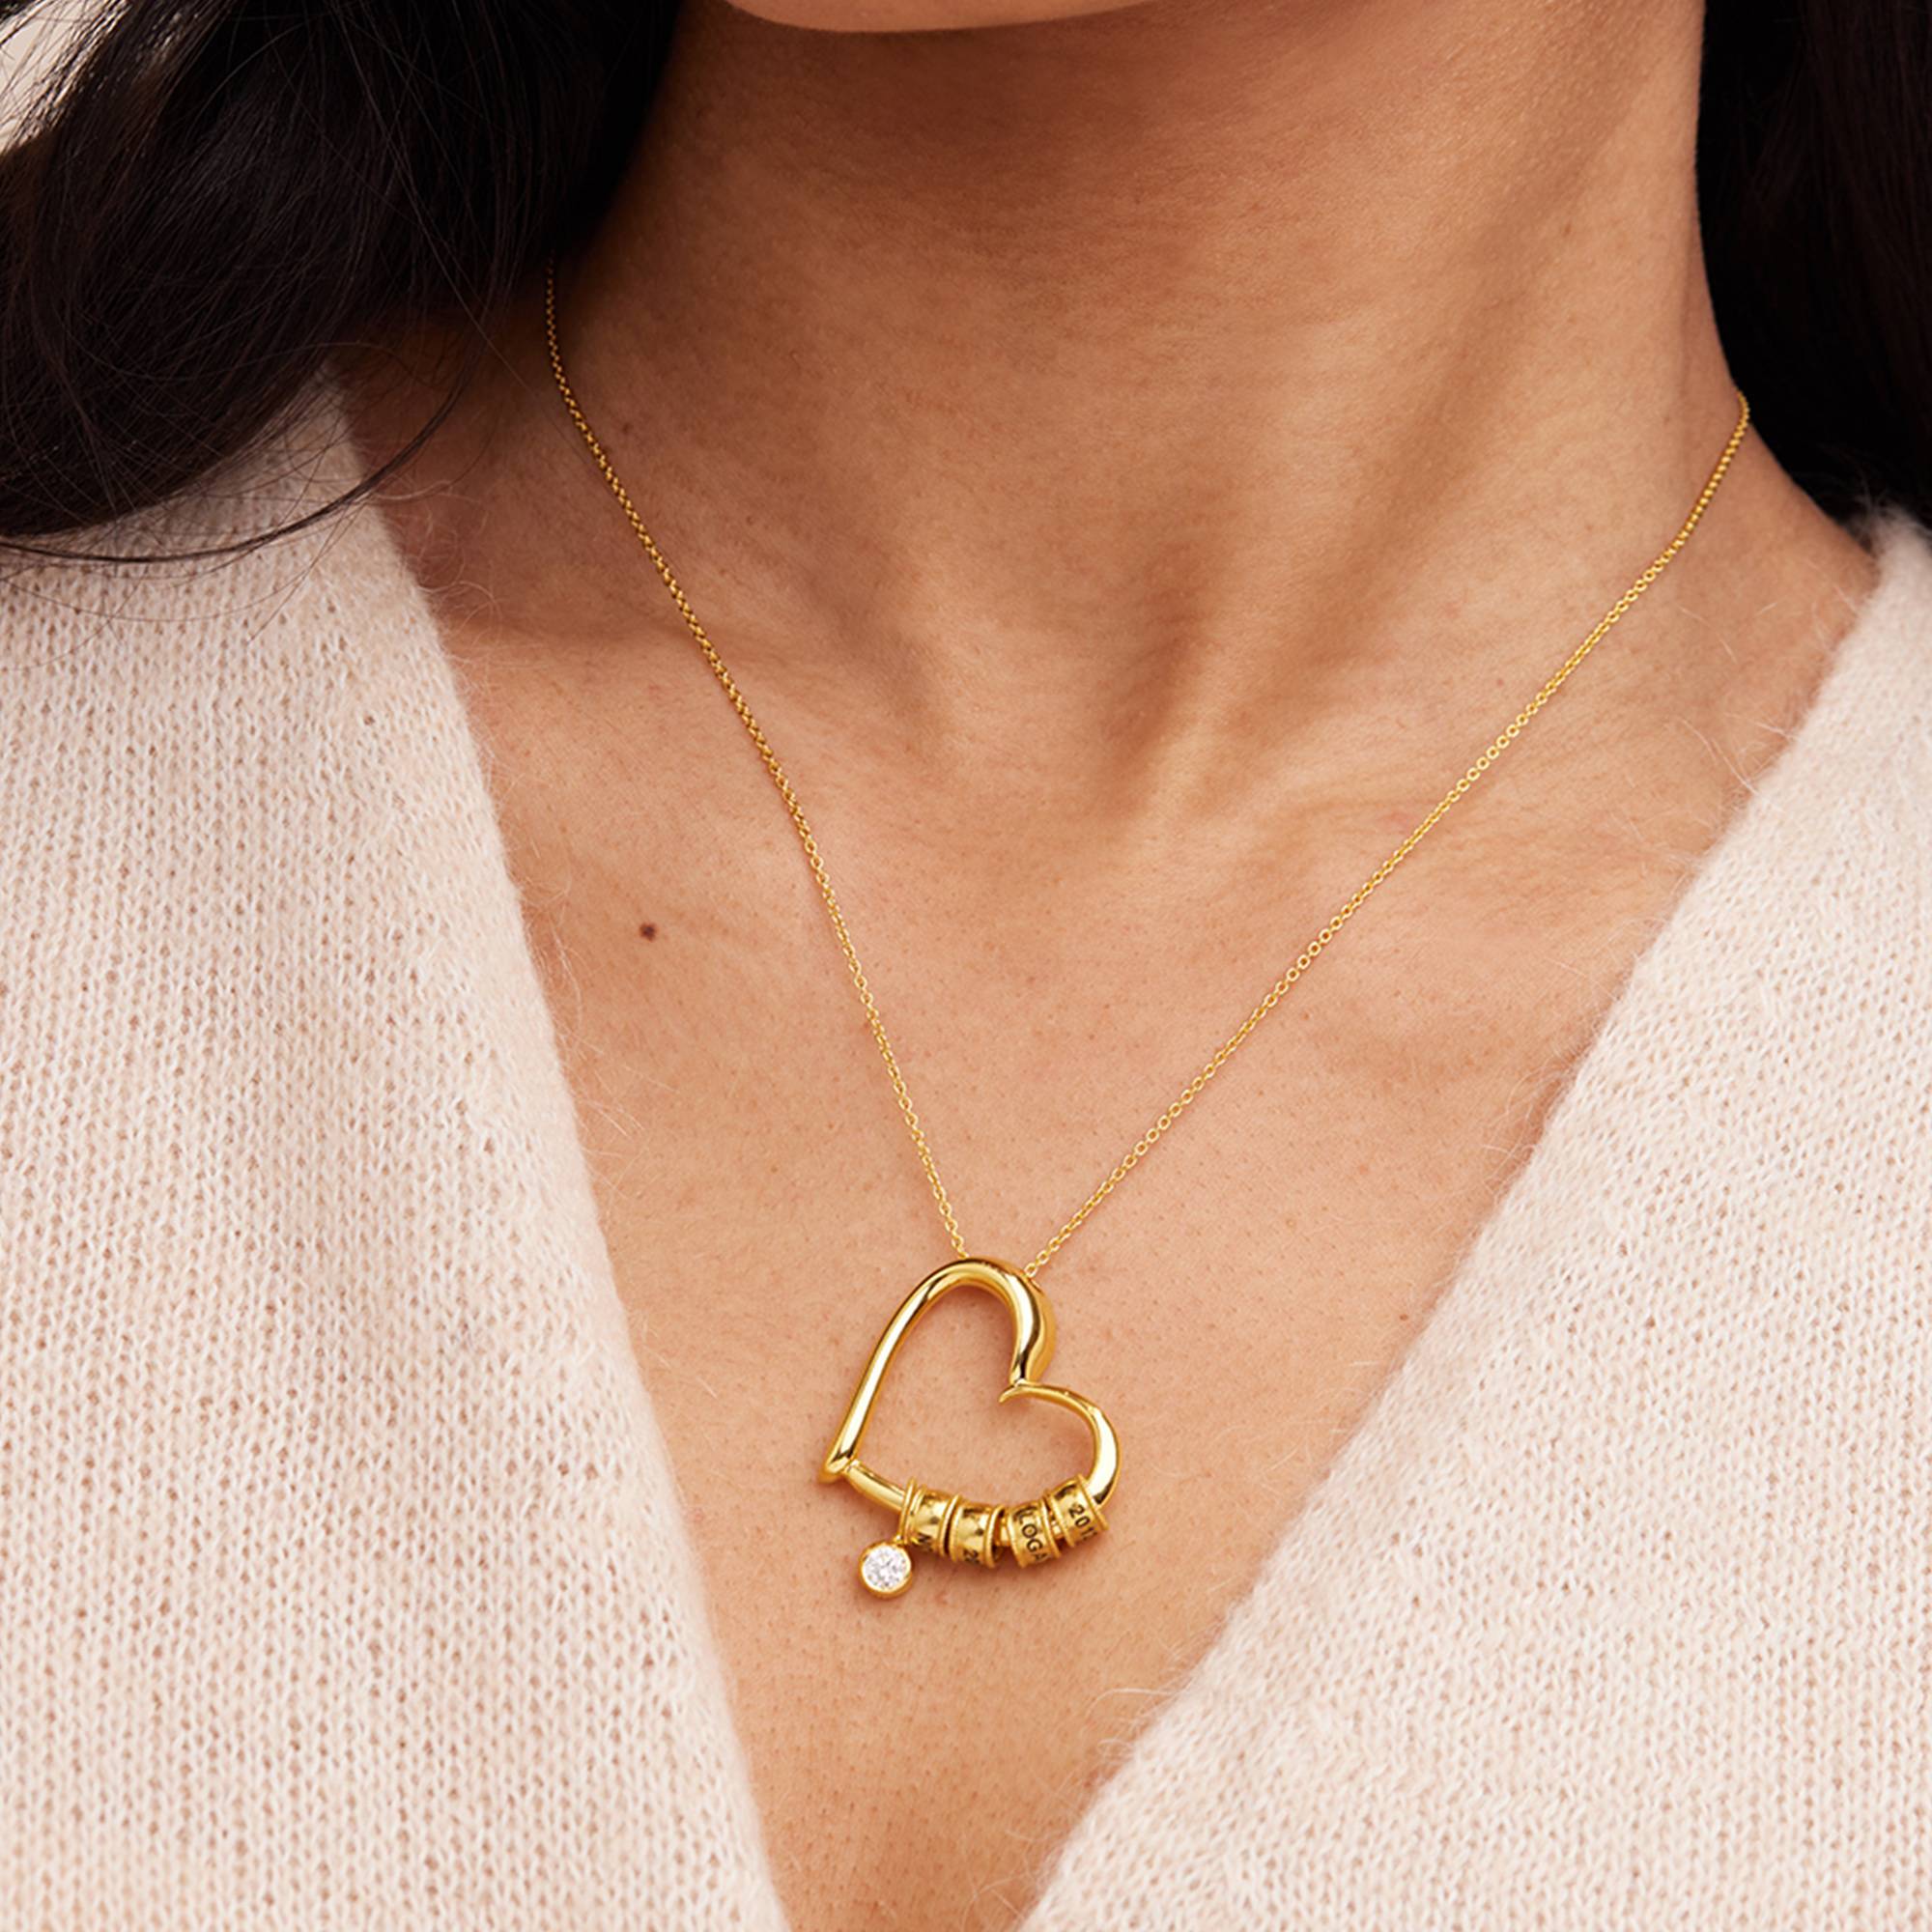 Collar "Charming Heart" con cuentas grabadas y 0.25ct diamantes en chapa de oro-6 foto de producto